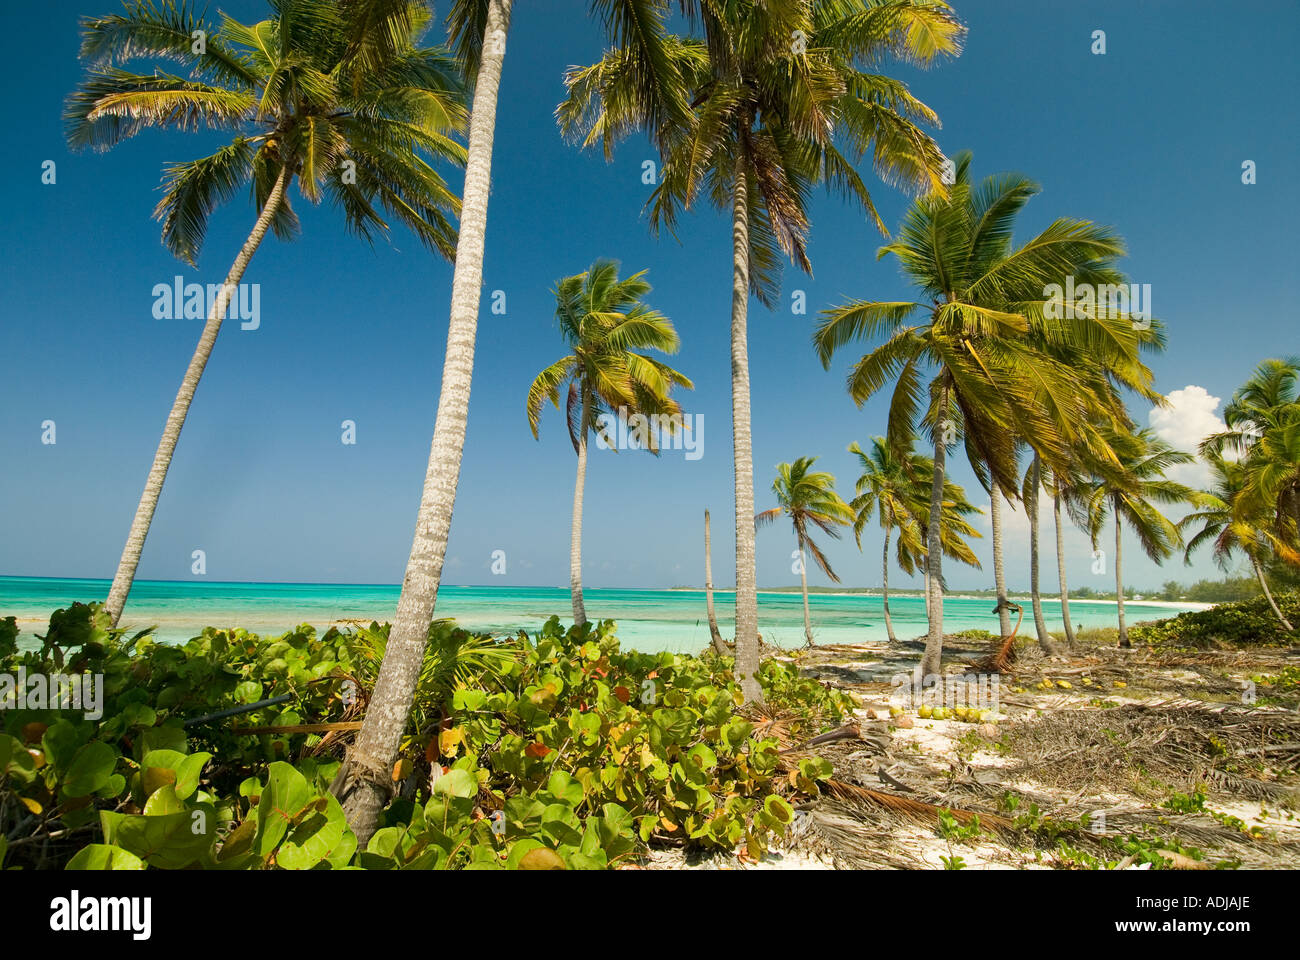 GREATER EXUMA BAHAMA Coconut lined palm trees along emerald blue shoreline and sandy beach Stock Photo